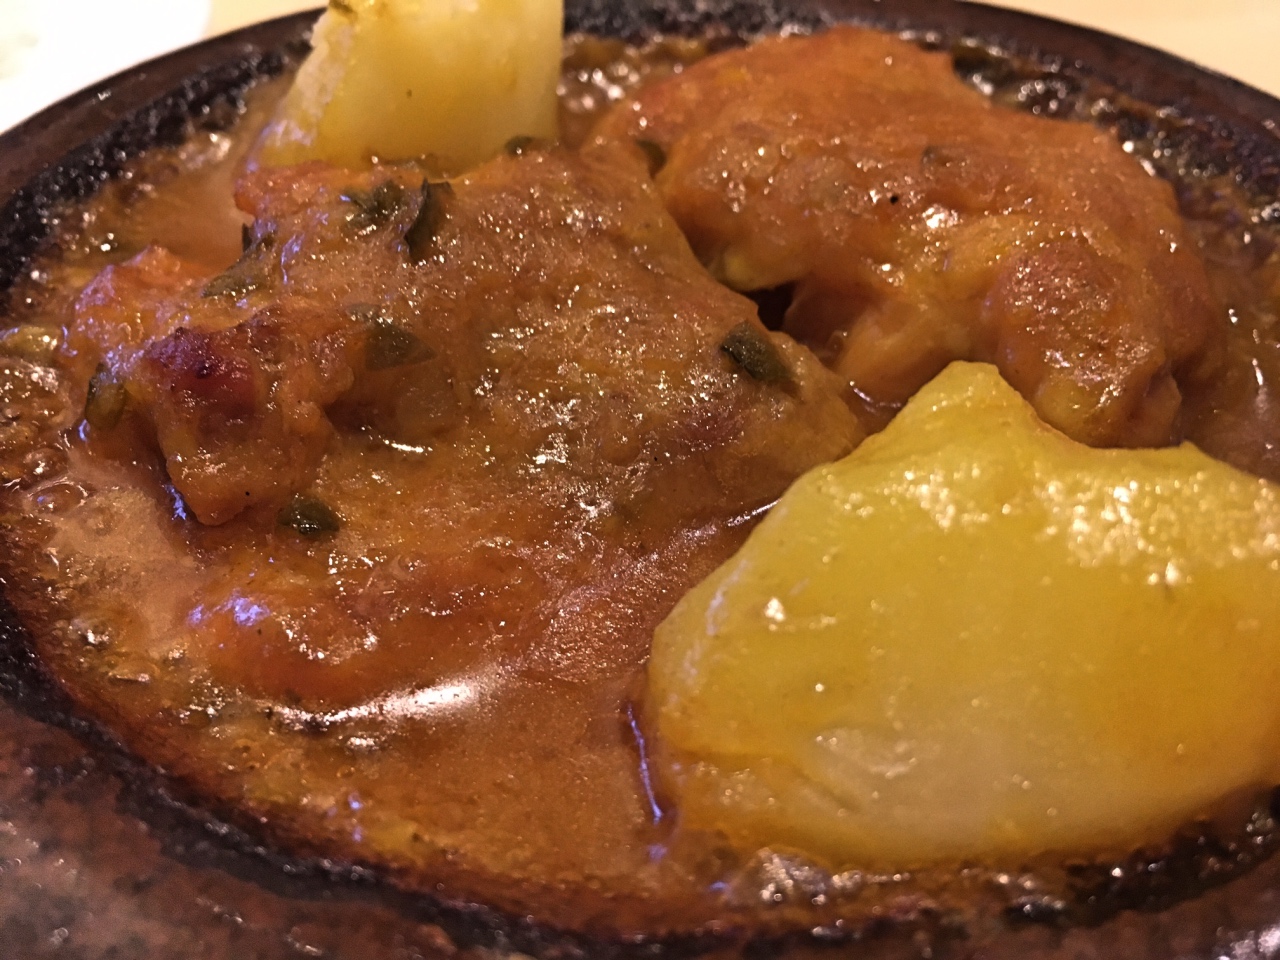 銀座で味わえる本格スペイン料理の老舗「エスペロ」の選べるランチ